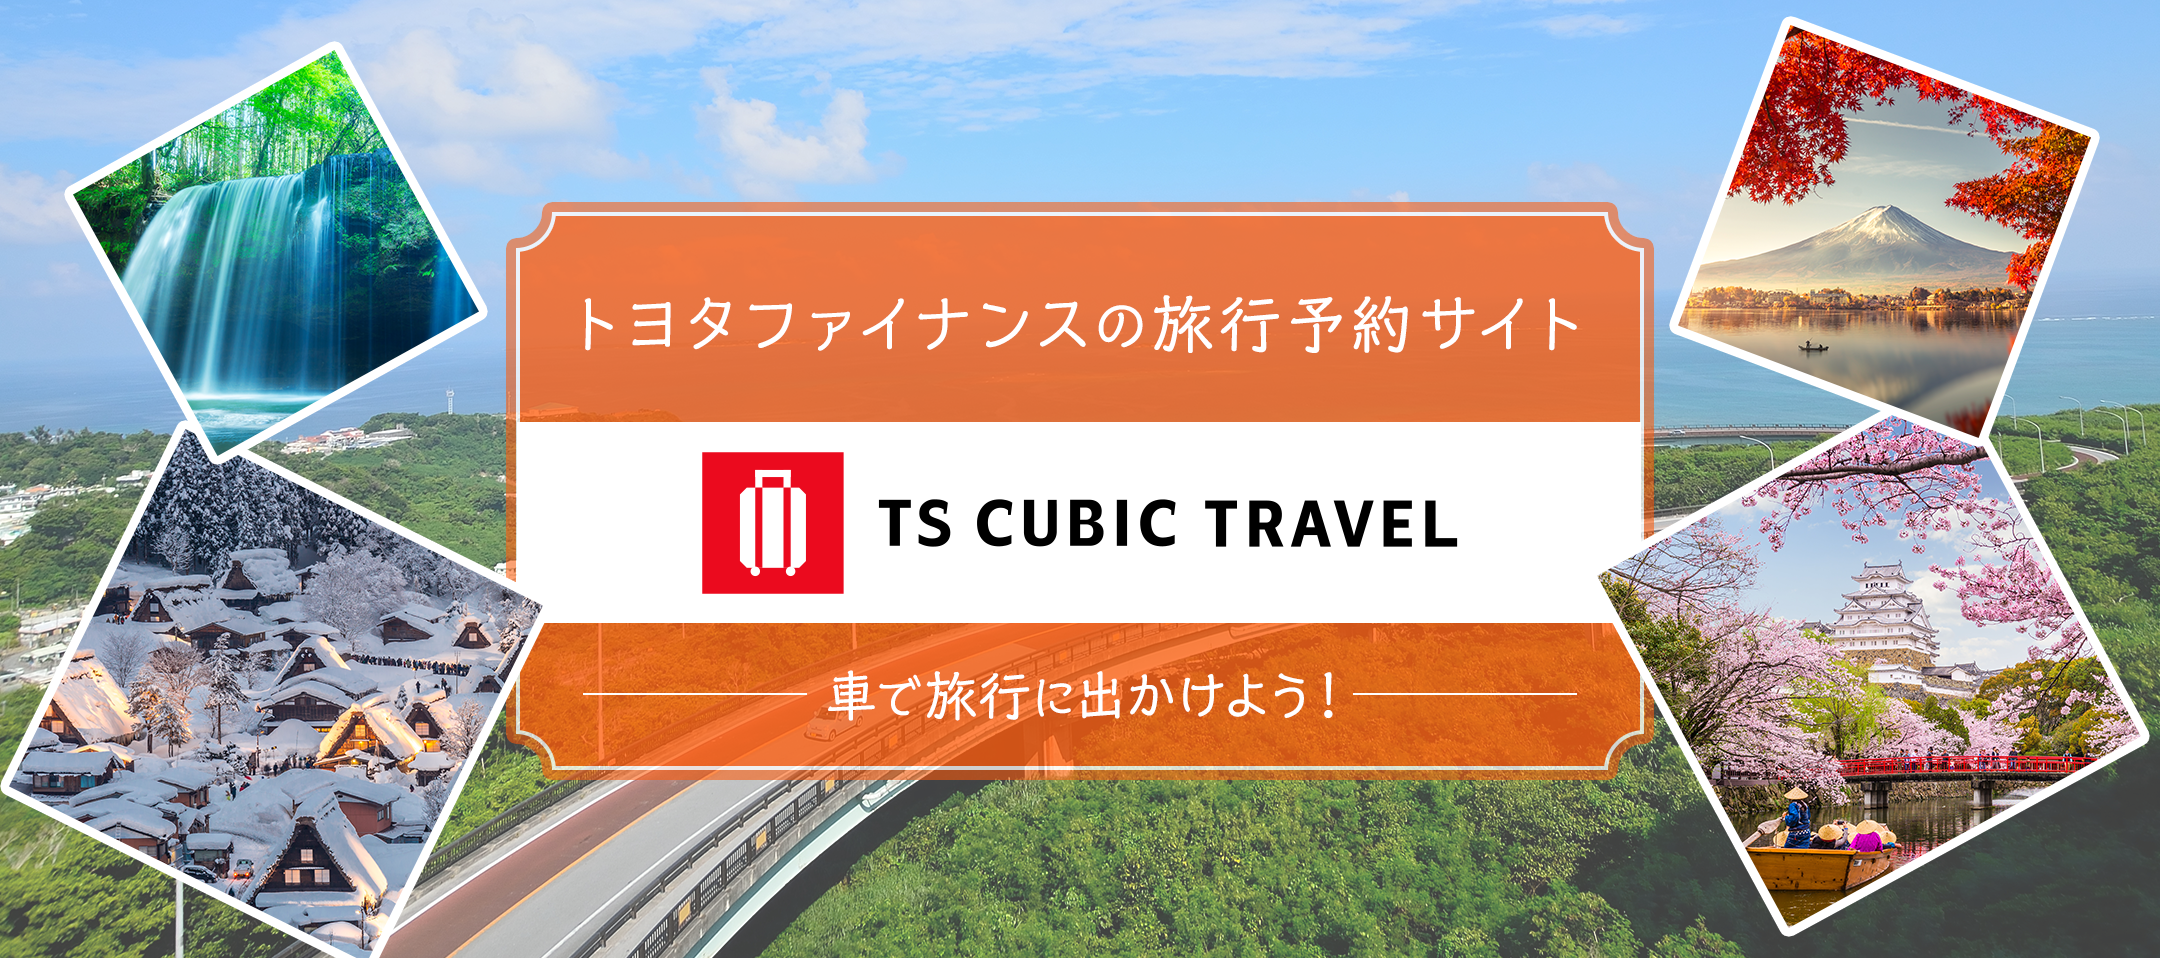 全国旅行支援実施中！トヨタファイナンスの旅行予約サイト TS CUBIC TRACEL 車で旅行に出かけよう！